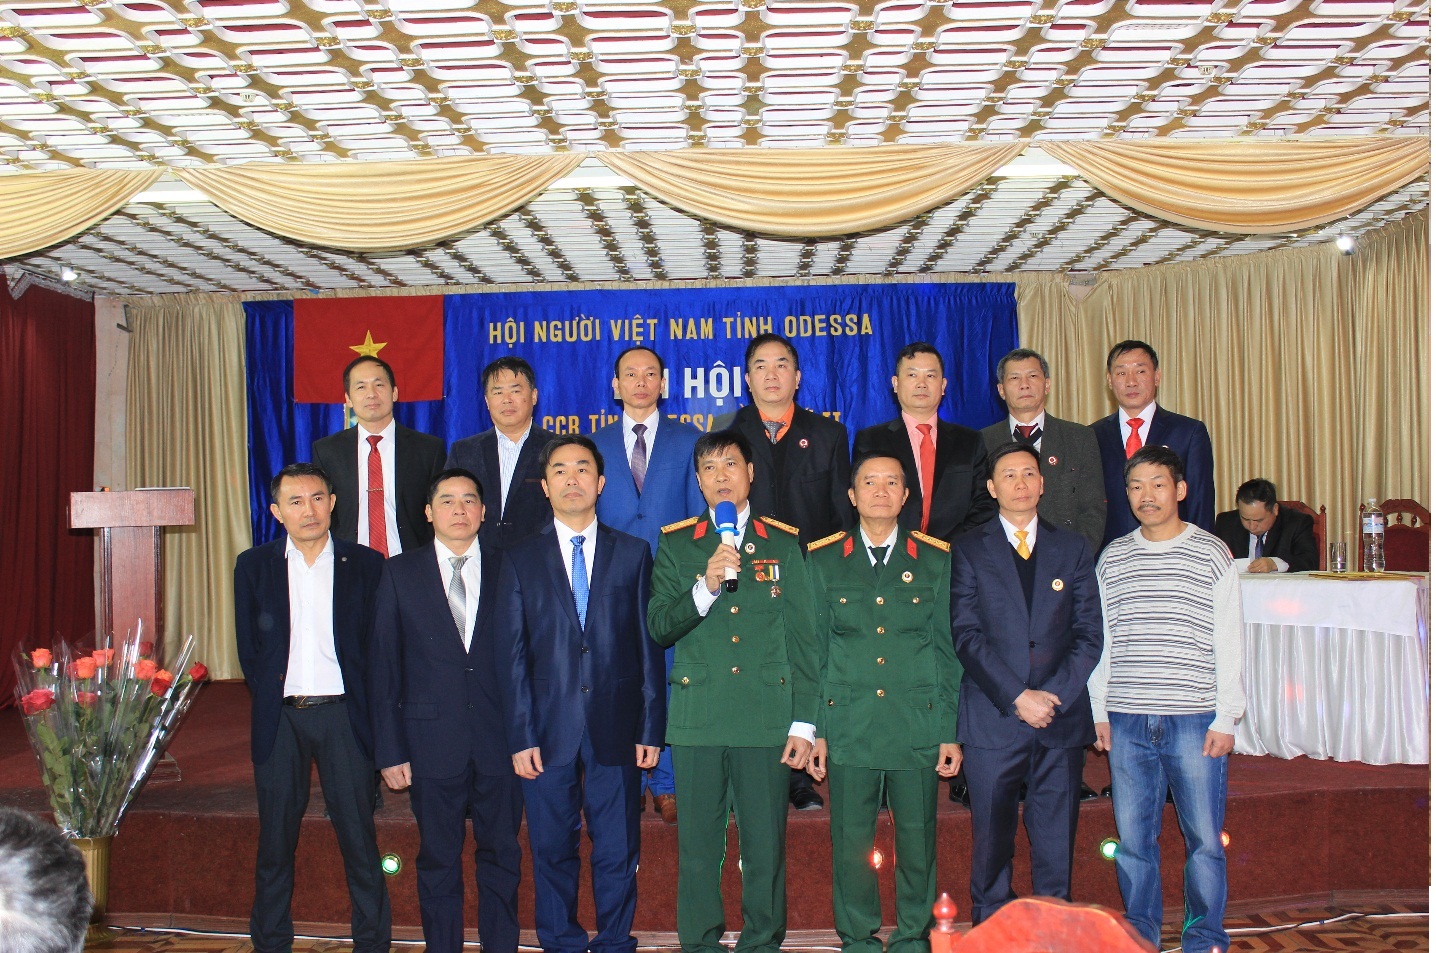 Đại hội Hội CCB Việt Nam tỉnh Odessa lần thứ II